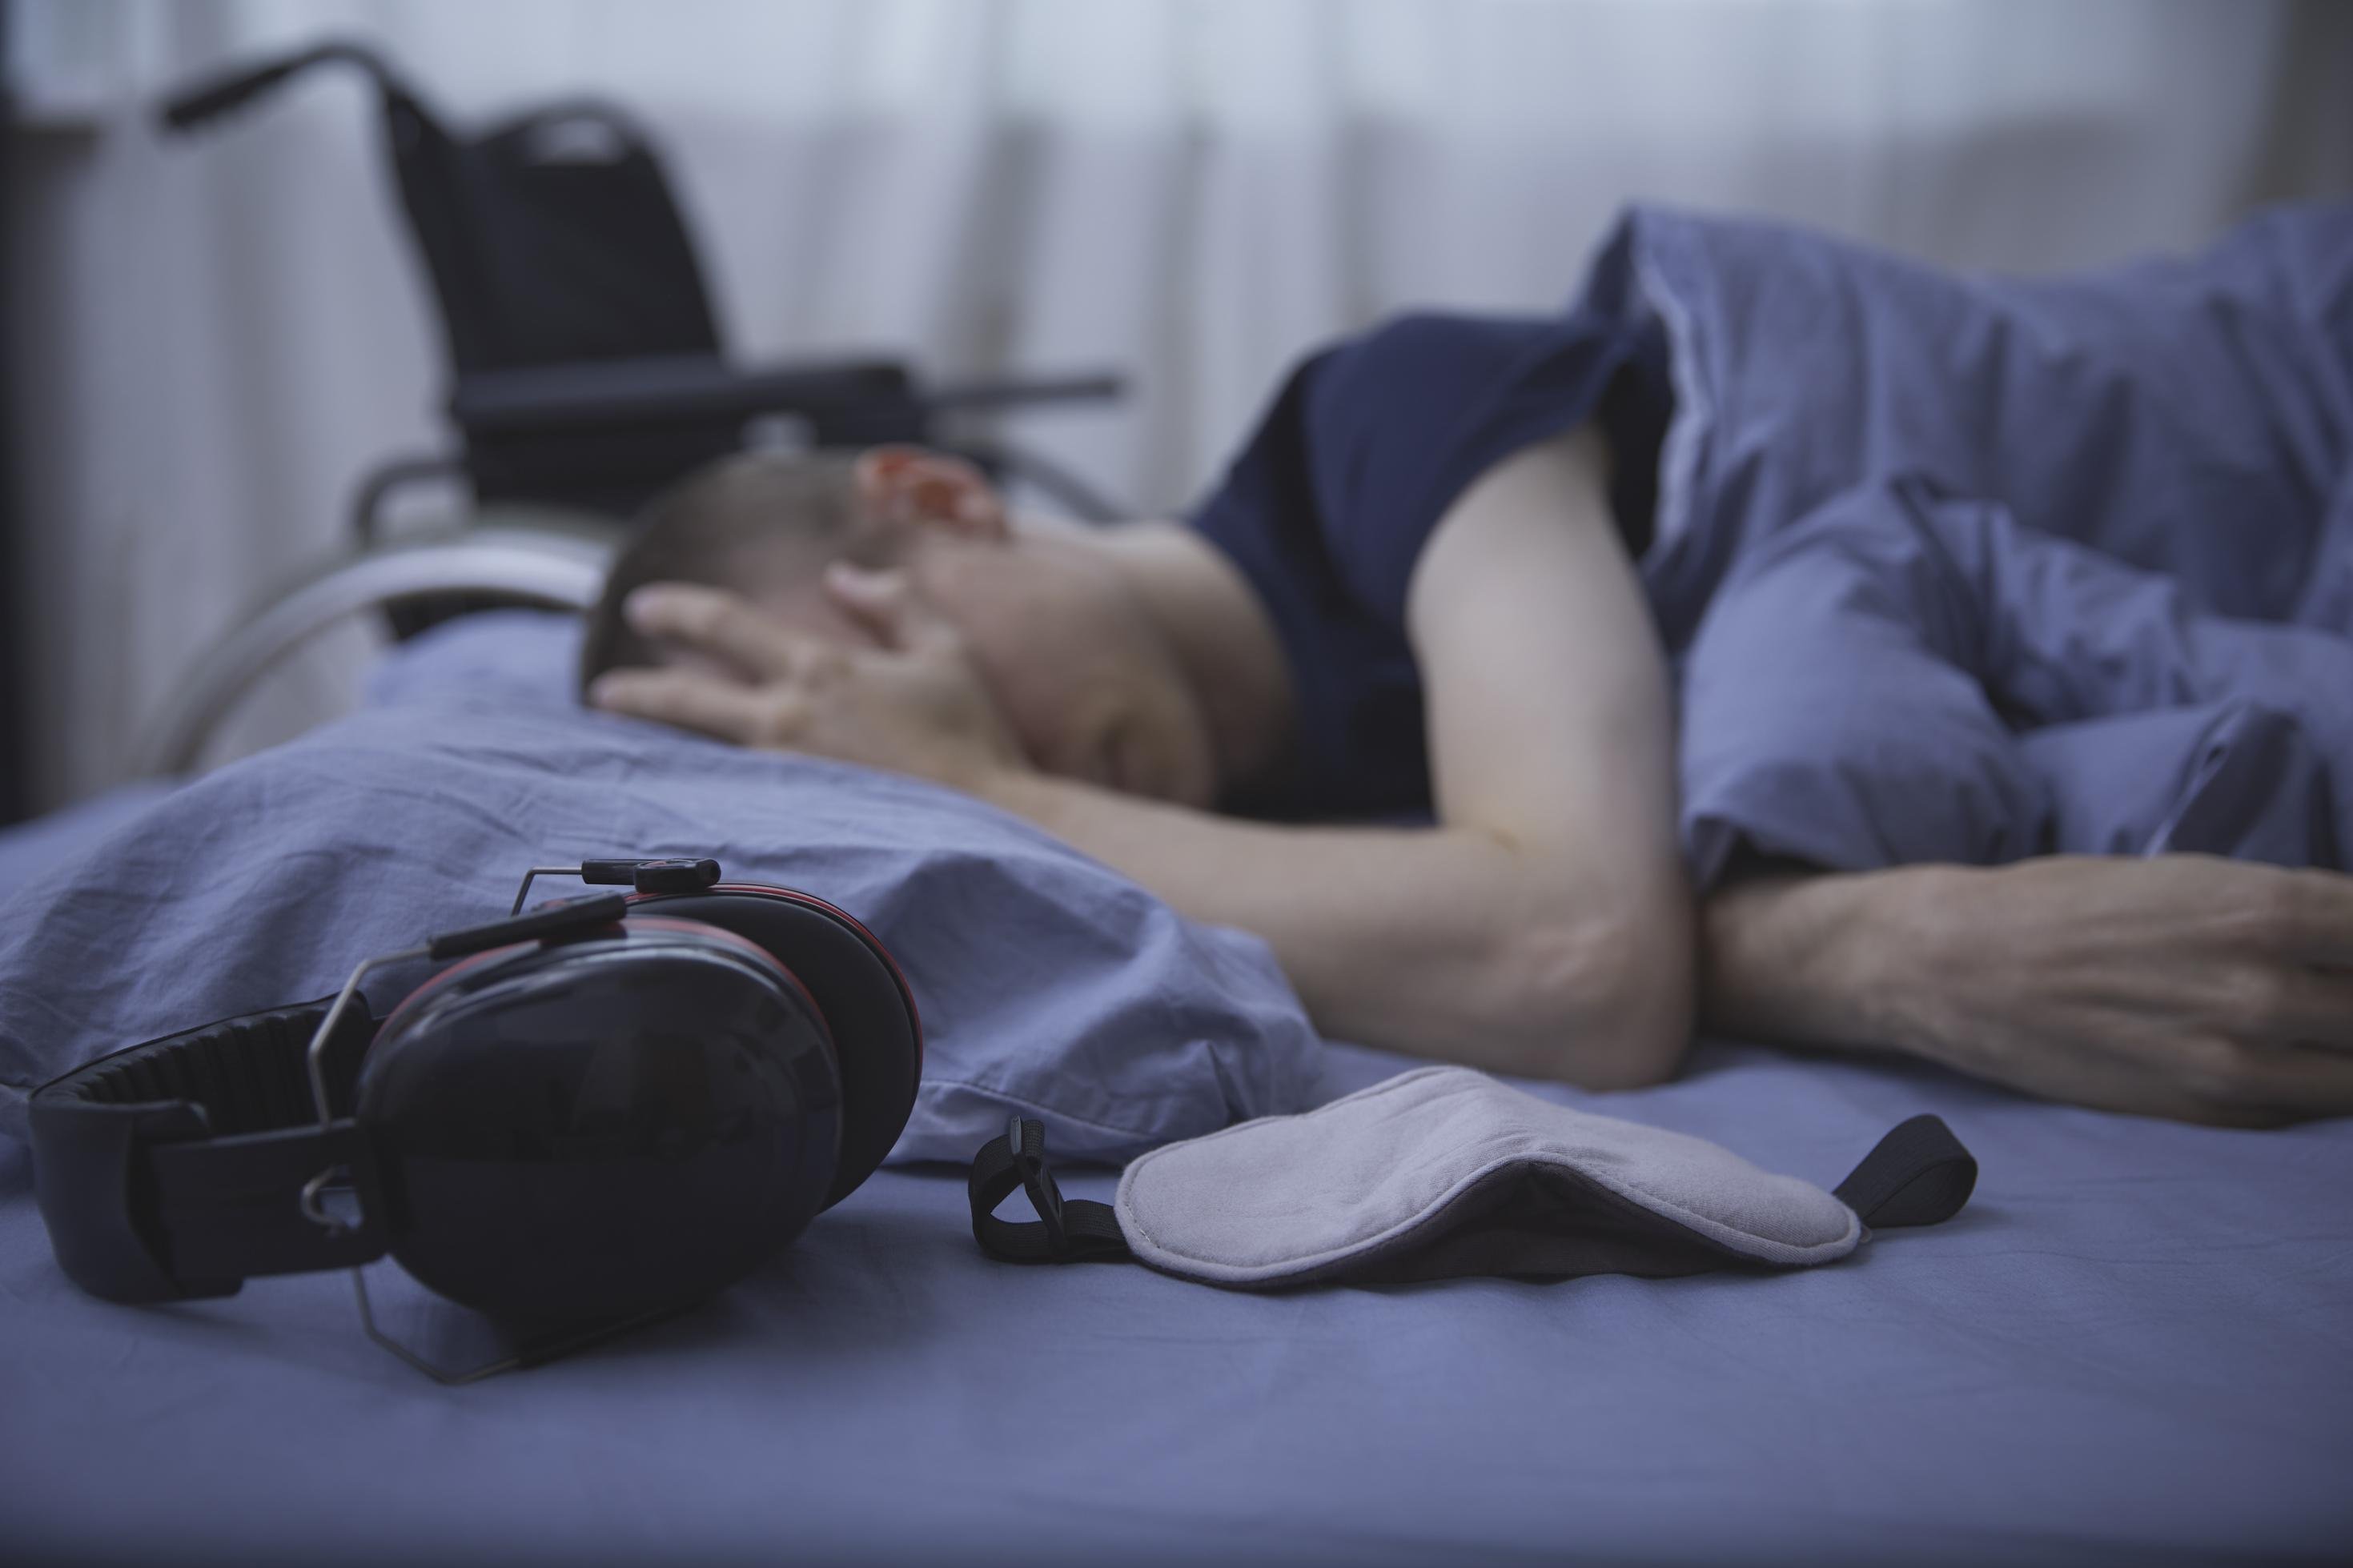 Schwer kranke Person liegt in einem Bett und hält eine Hand an die Stirn. Auf der Matratze vor ihr liegen Kopfhörer und eine Augenmaske, im Bildhintergrund ist ein Rollstuhl erkennbar.